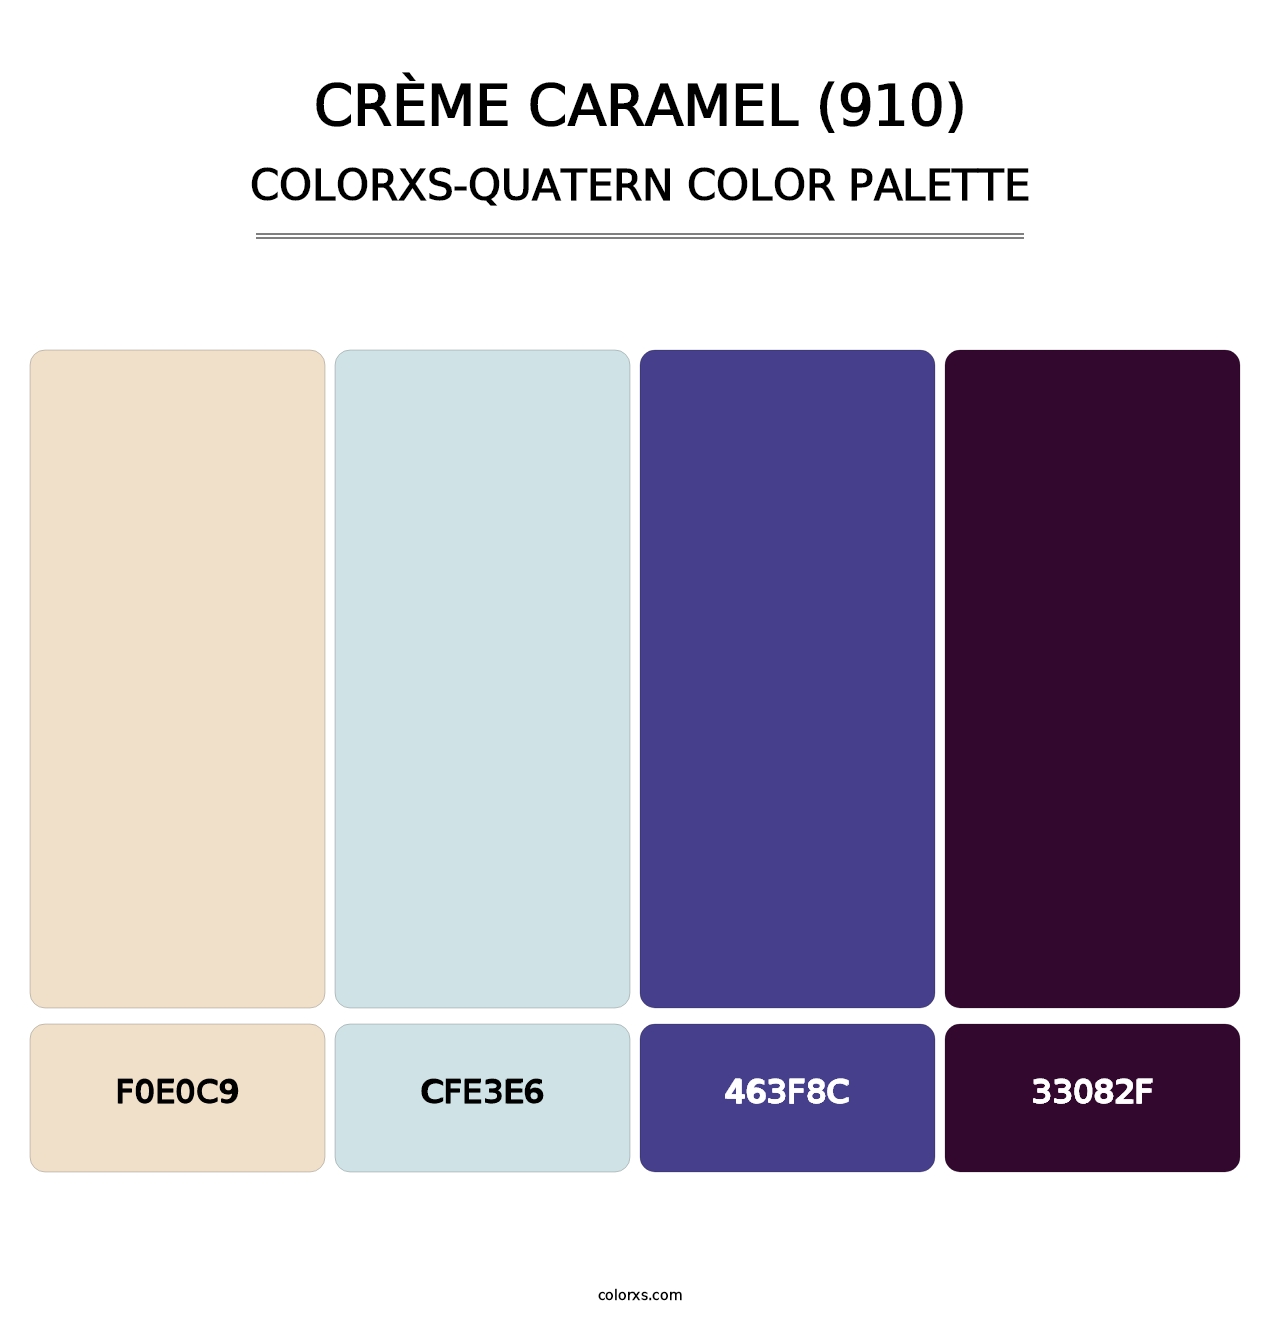 Crème Caramel (910) - Colorxs Quatern Palette